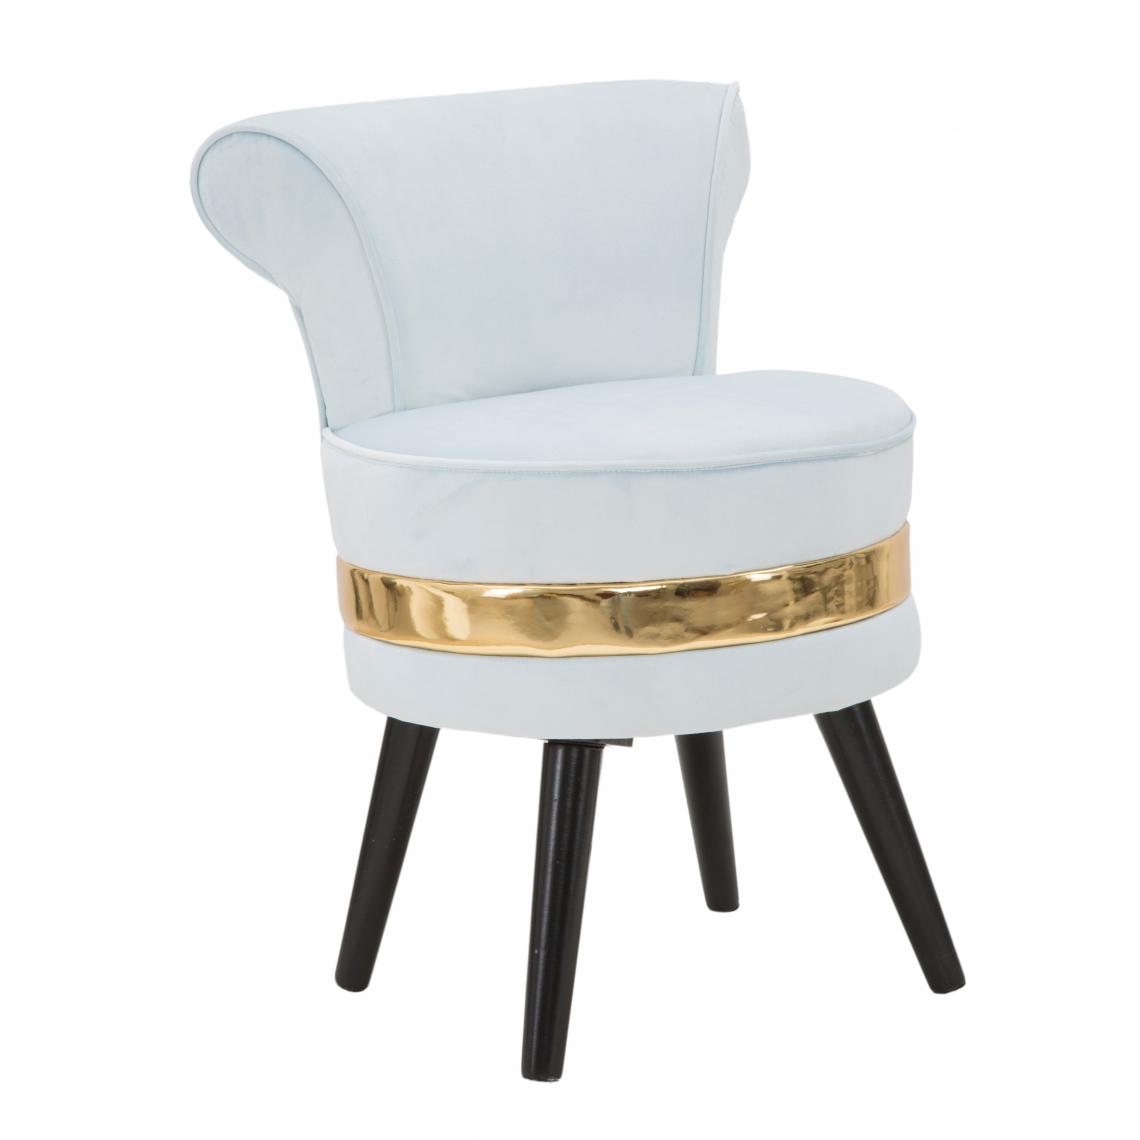 Alter - Mini chaise en bois de pin, tissu éponge et velours, couleur bleu clair avec bande dorée, Mesure 47 x 64 x 47 cm - Chaises